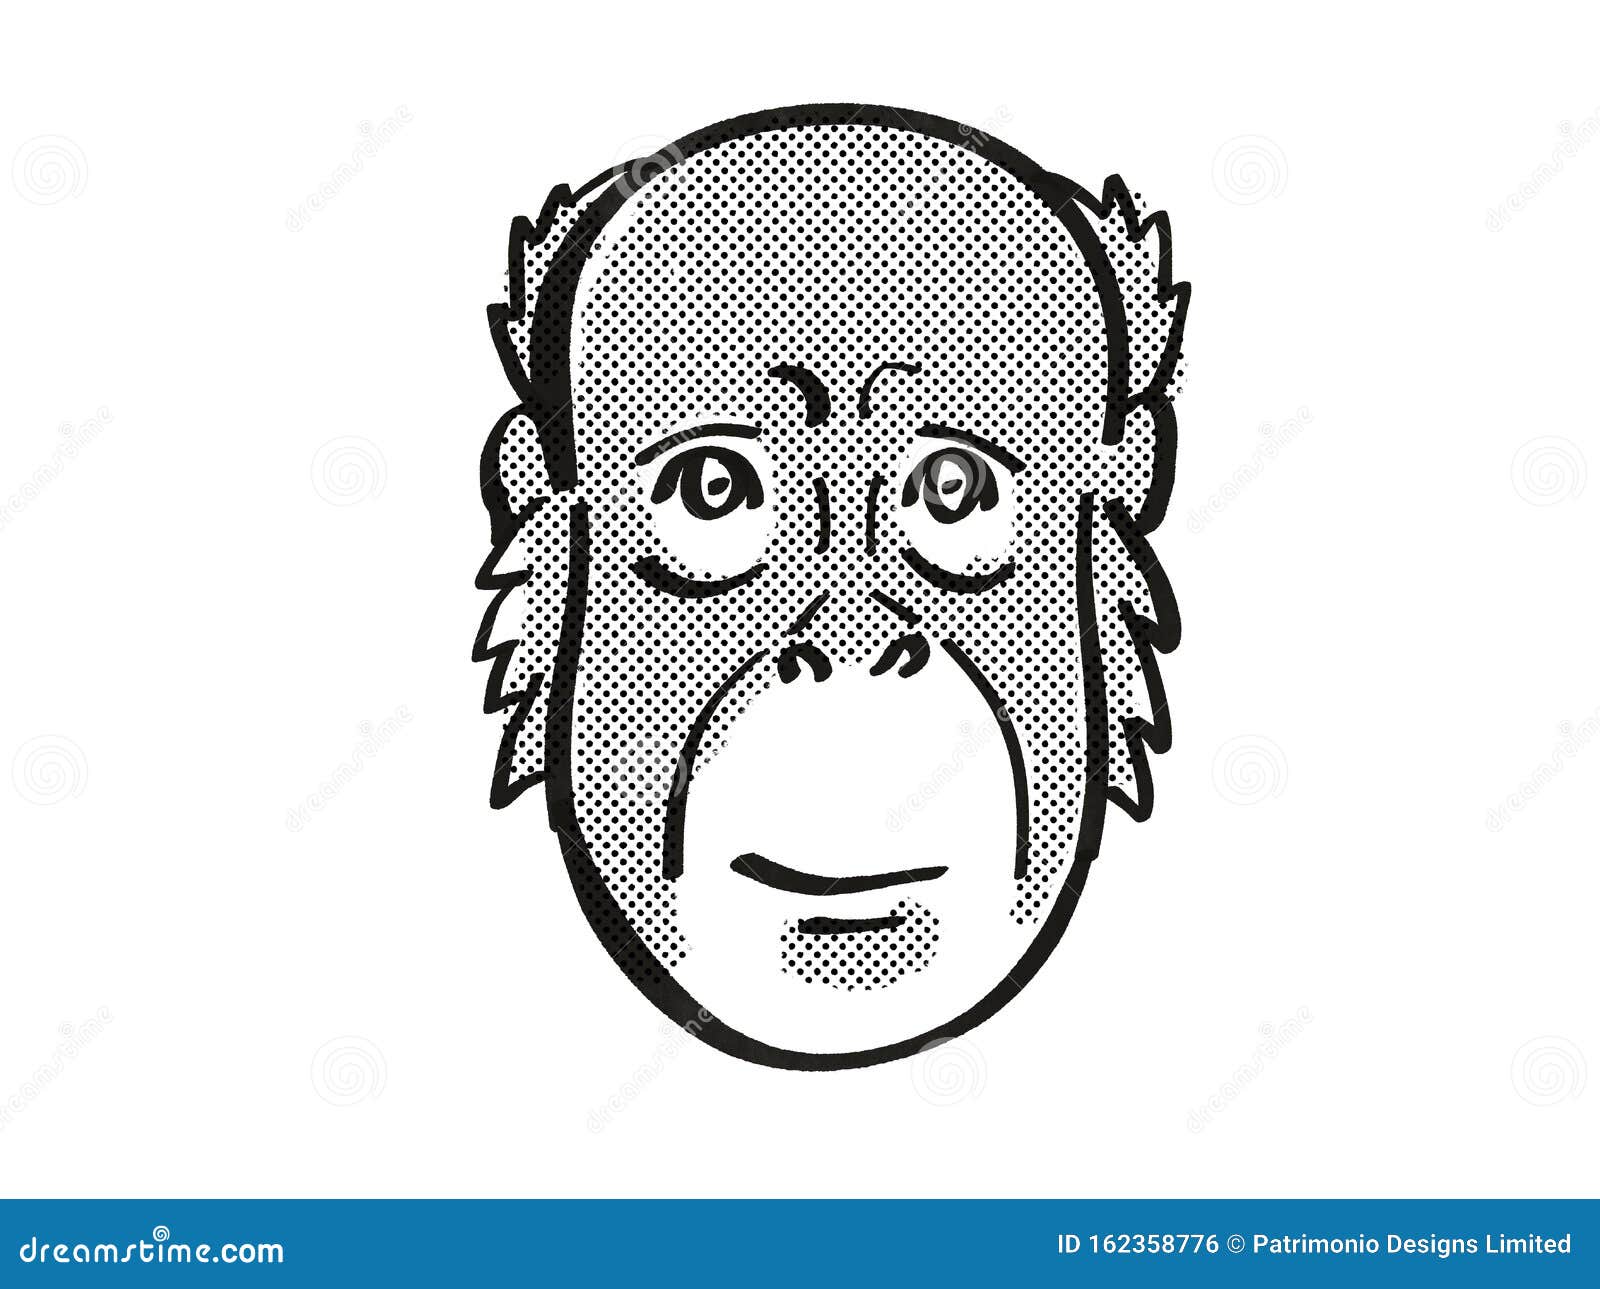 bornean orang-utan endangered wildlife cartoon mono line drawing